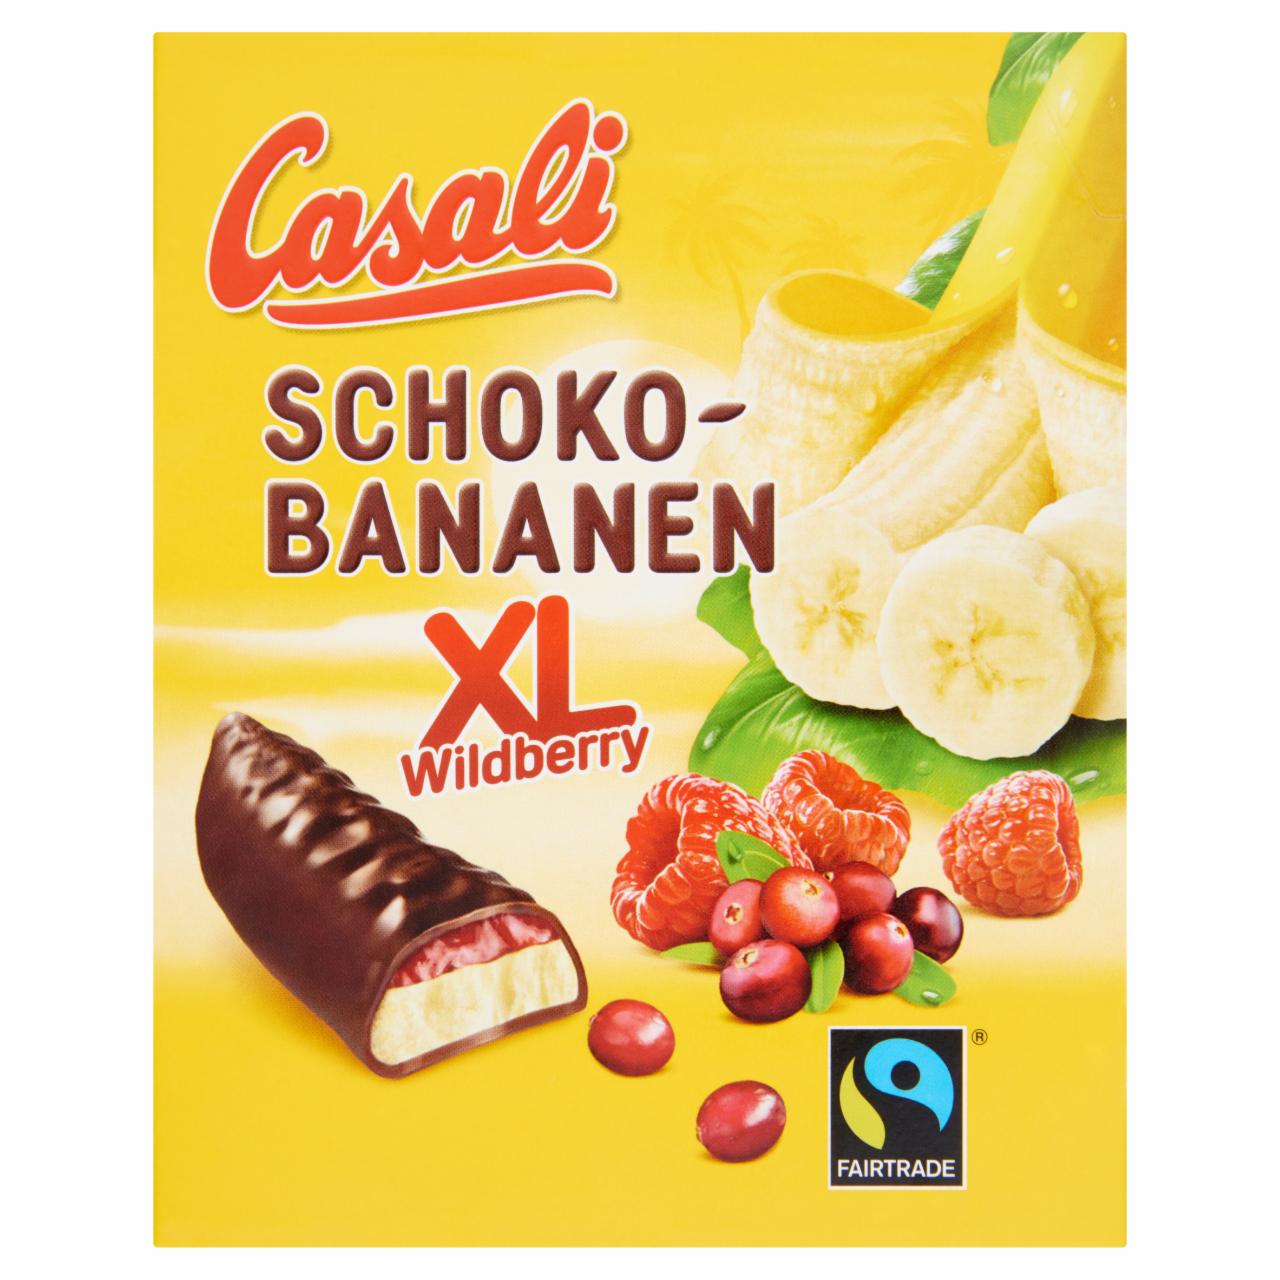 Képek - Casali XL csokoládéba mártott habosított banánkrém gyümölcszselével 140 g